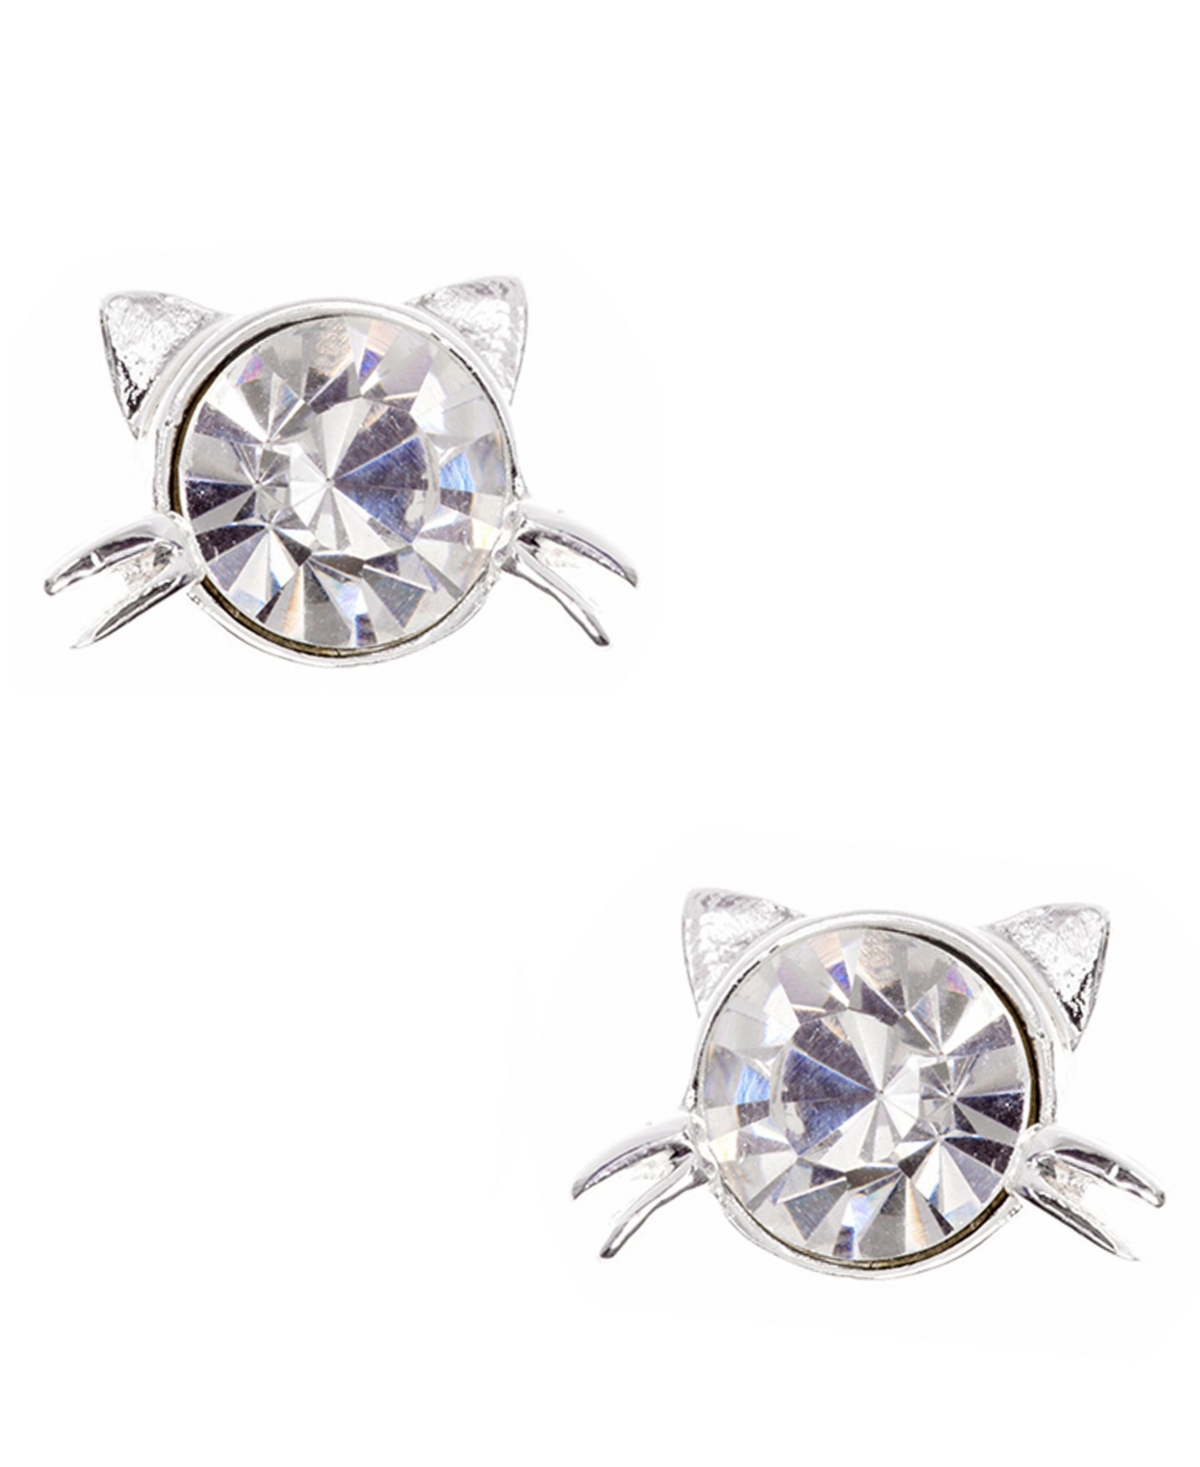 Pet Friends Jewelry Cat Stone Stud Earring - Silver-tone